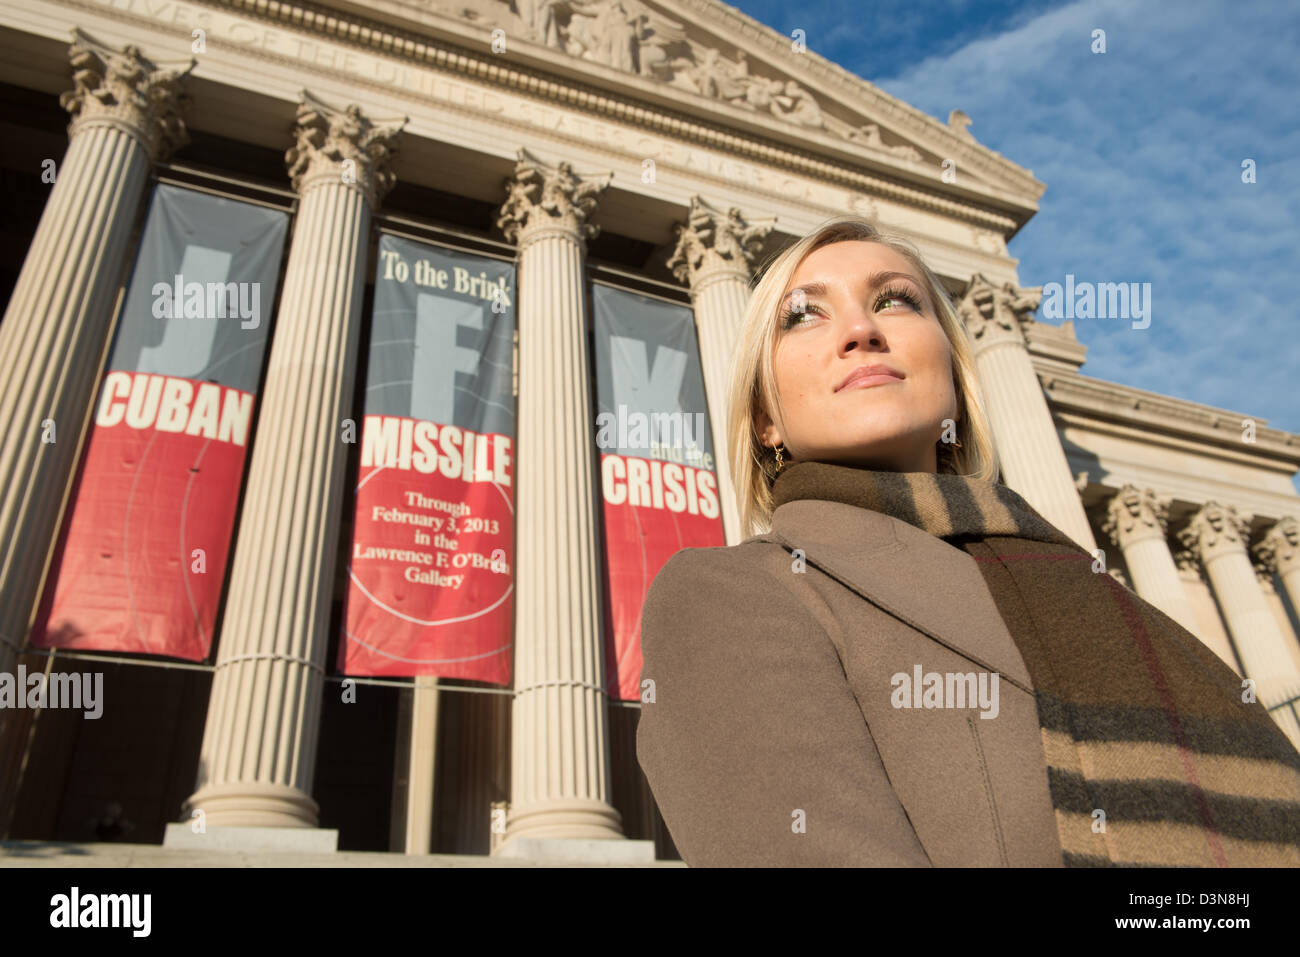 Russische Frau vor nationalen Archiven kubanische Flugkrise Ausstellung, Washington DC Stockfoto